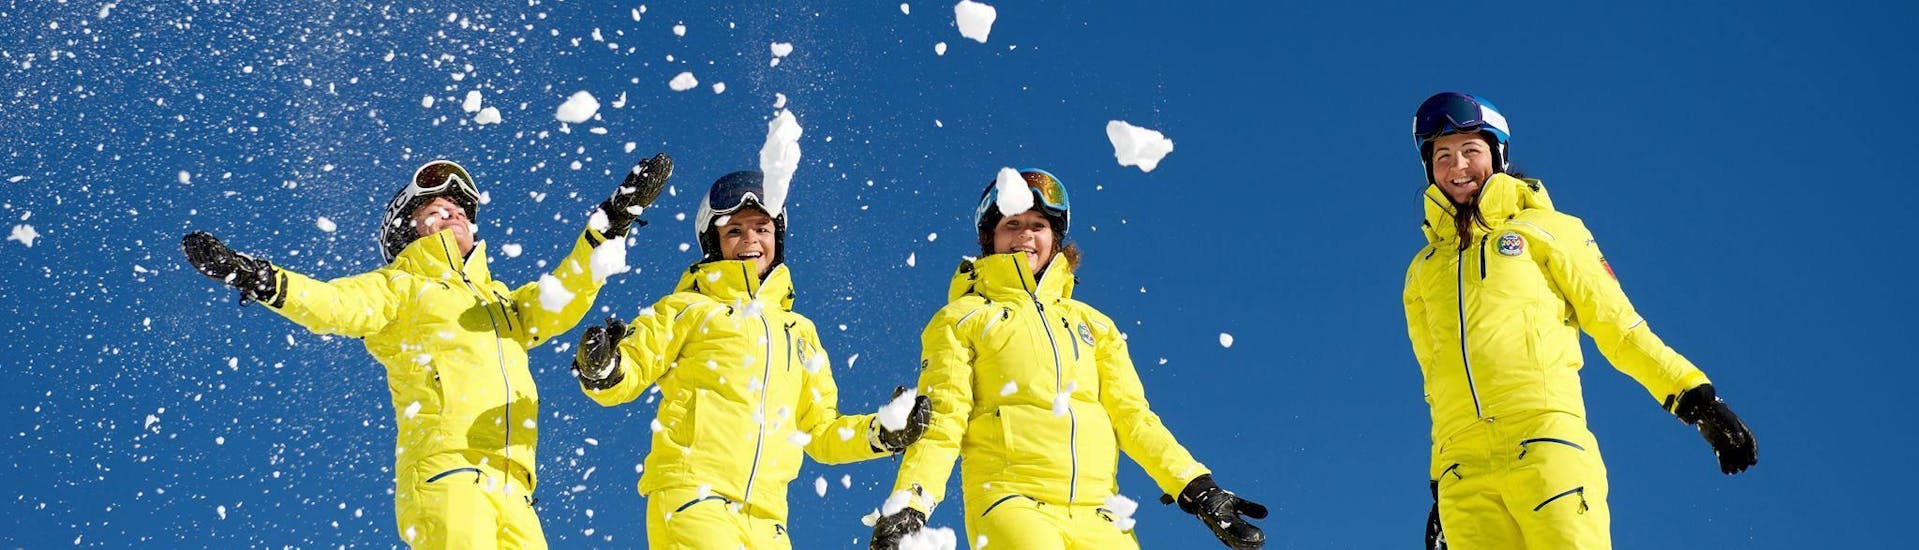 I maestri di sci si divertono sulla neve - Lezioni private di sci per adulti di tutti i livelli.